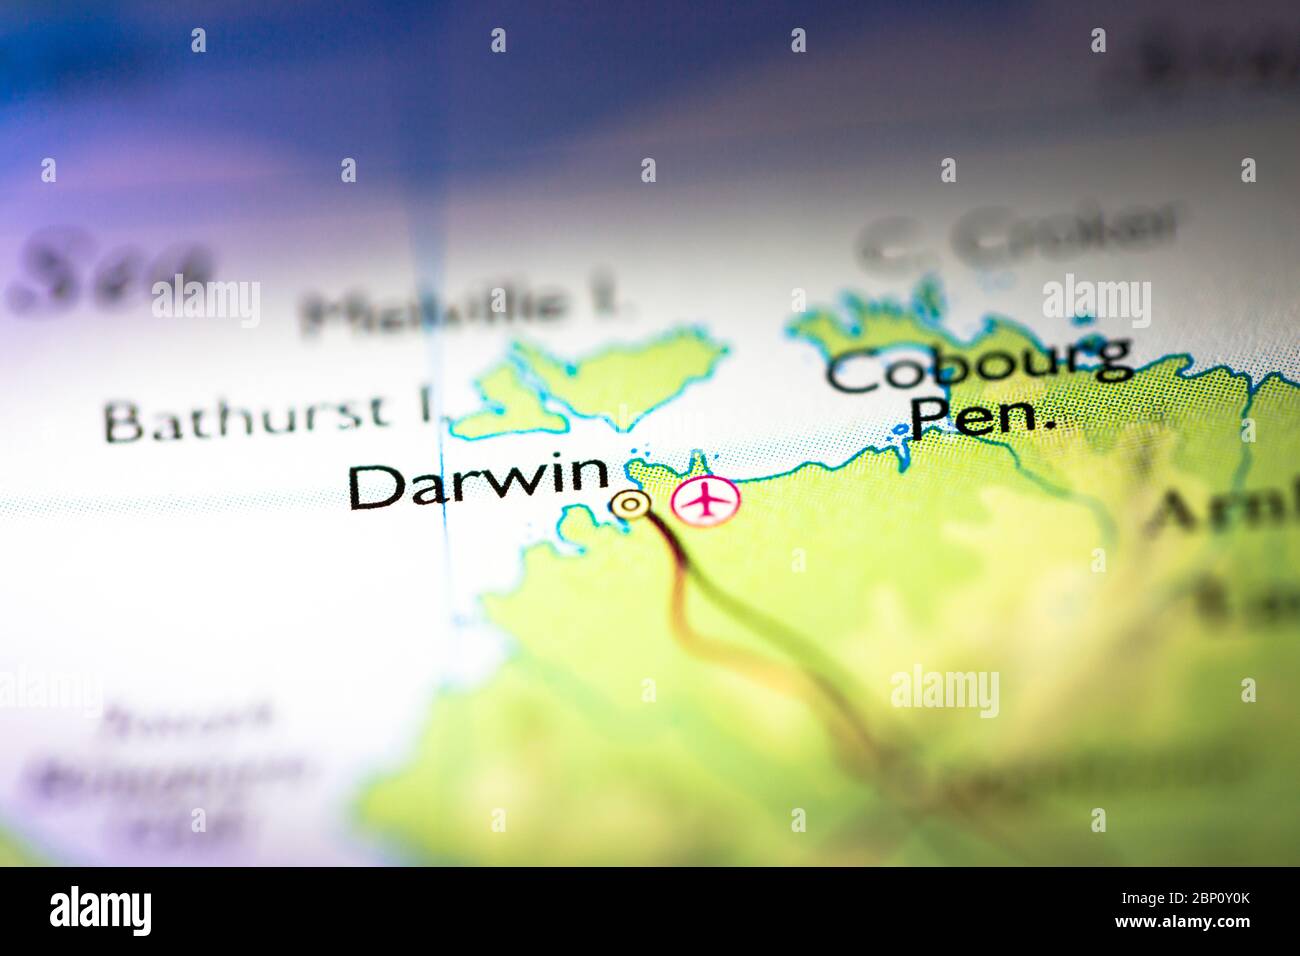 Profundidad de campo reducida se centra en la ubicación geográfica del mapa de la ciudad de Darwin en Australia continente Australasia en el atlas Foto de stock